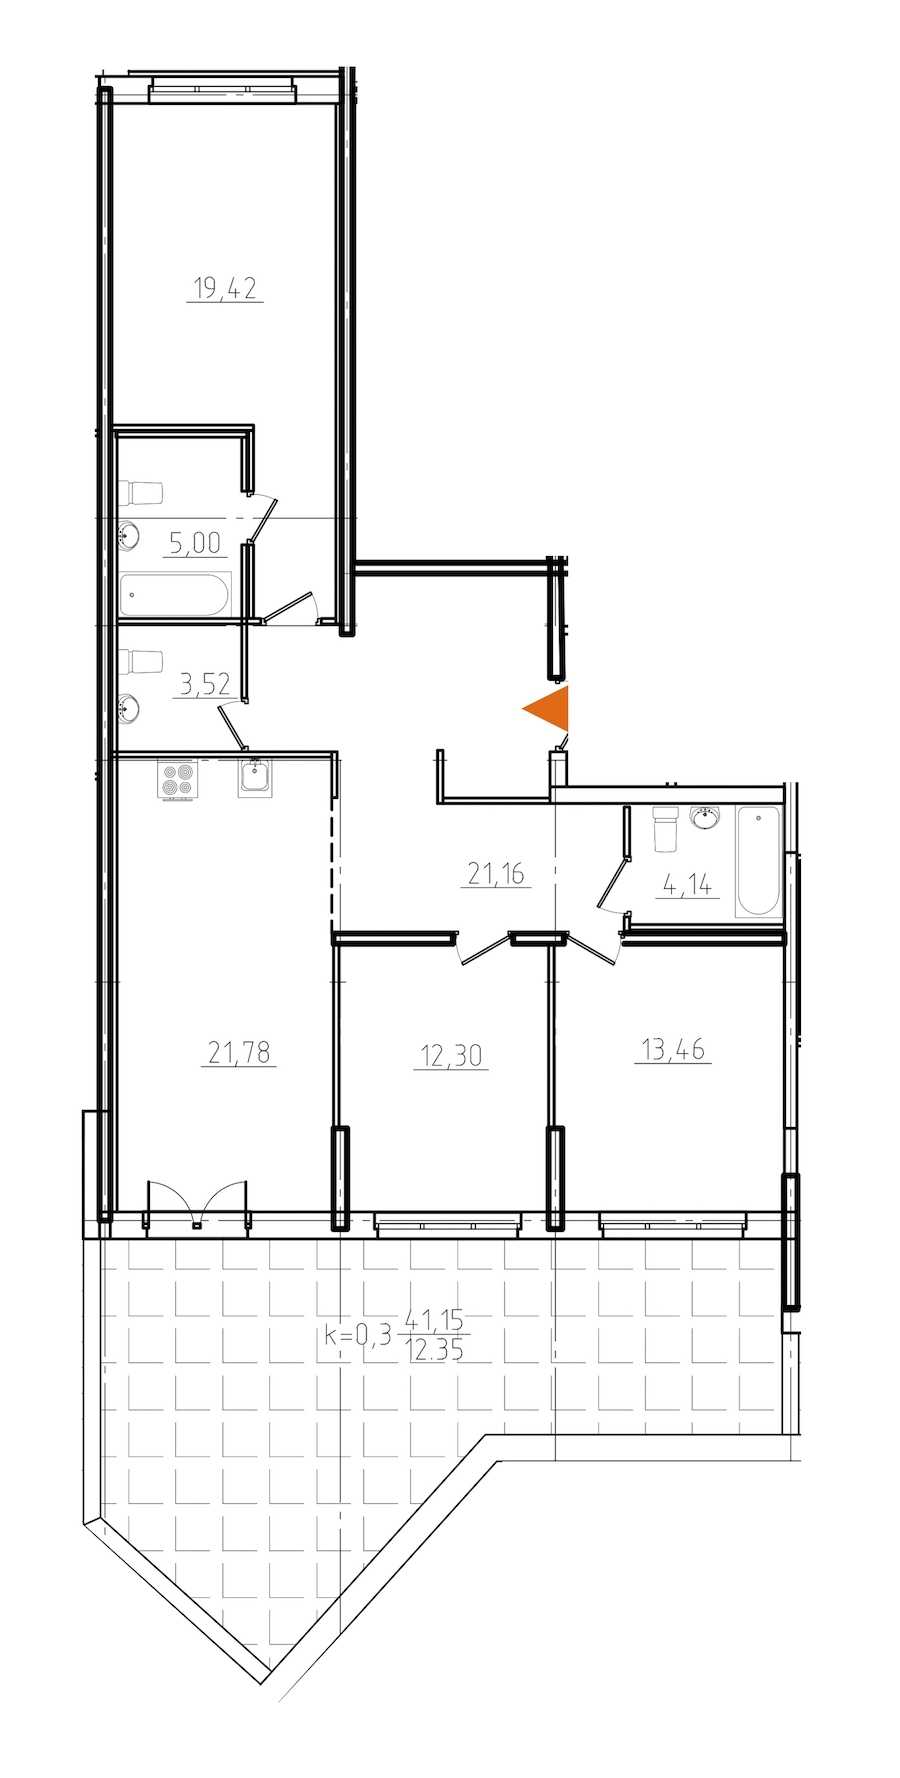 Трехкомнатная квартира в : площадь 113.13 м2 , этаж: 3 – купить в Санкт-Петербурге